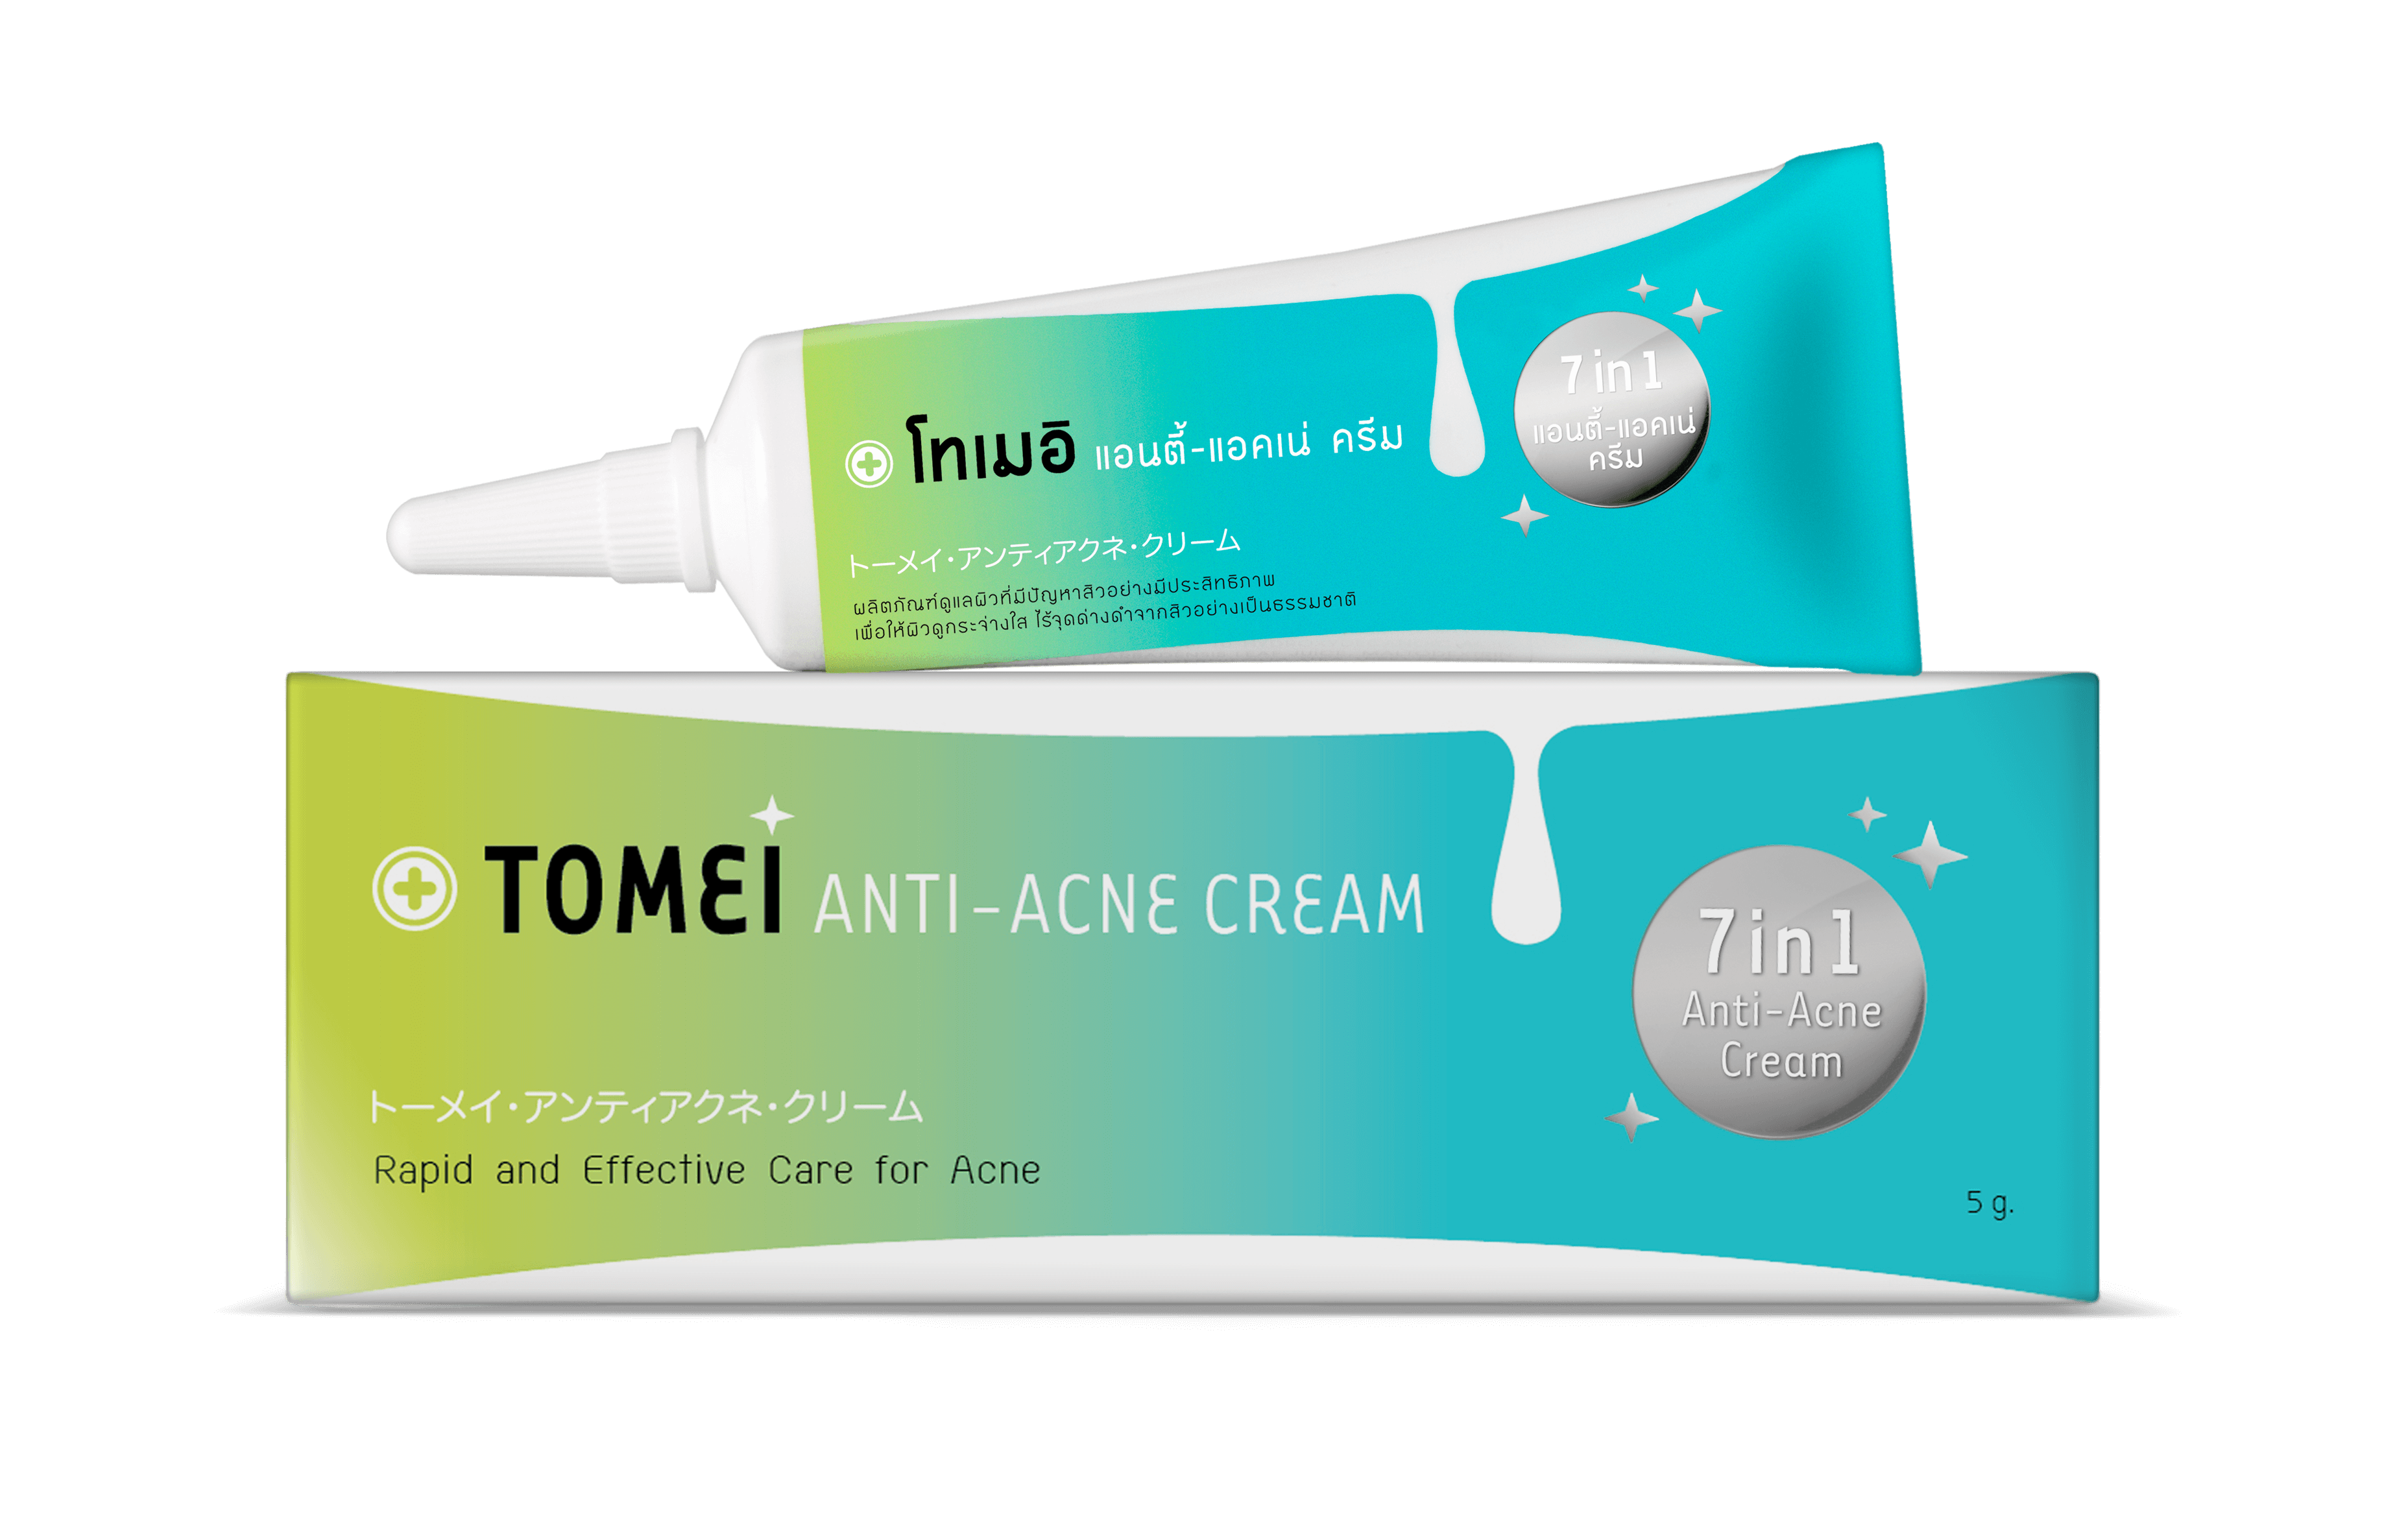 TOMEI Anti-Acne Cream